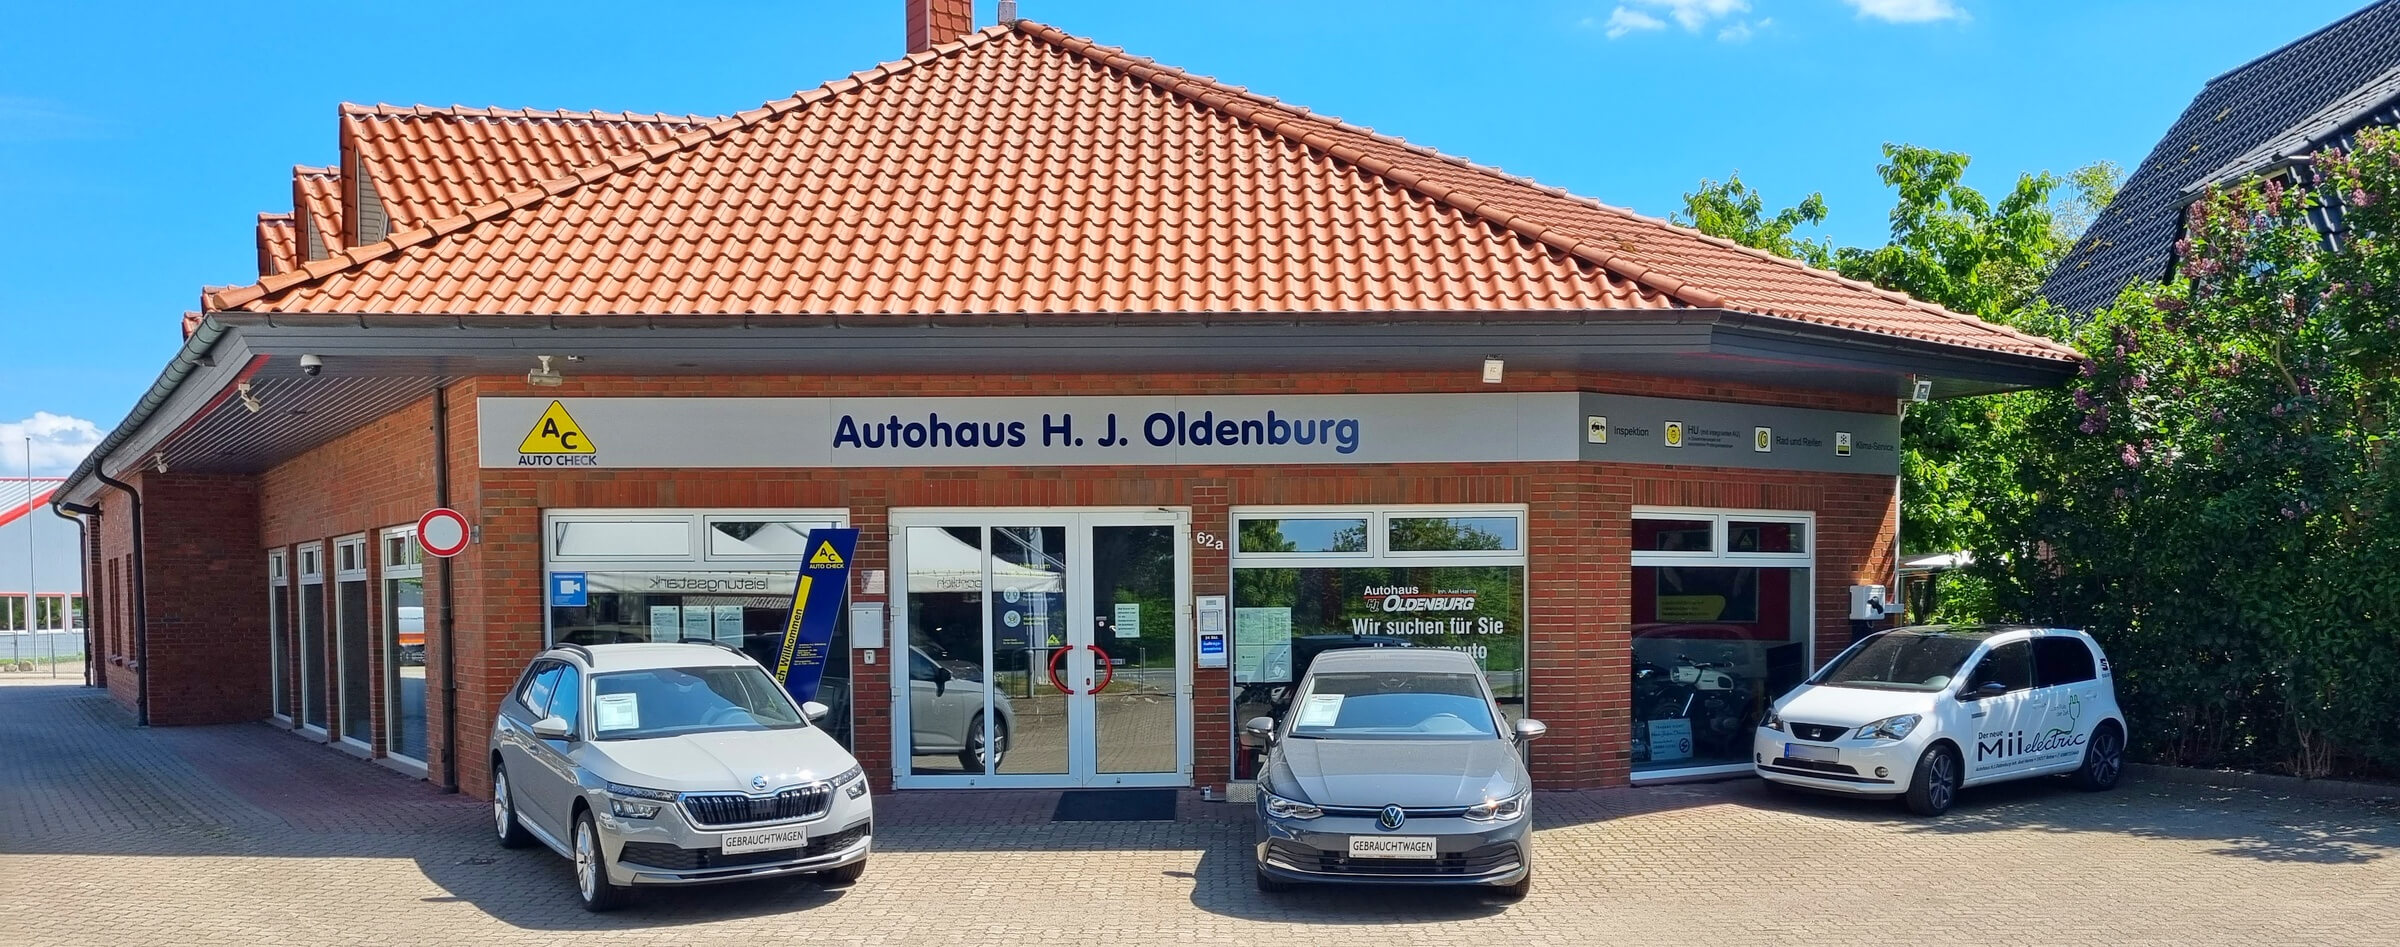 Autohaus H.J. Oldenburg in Rehna - Autocheck Werkstatt